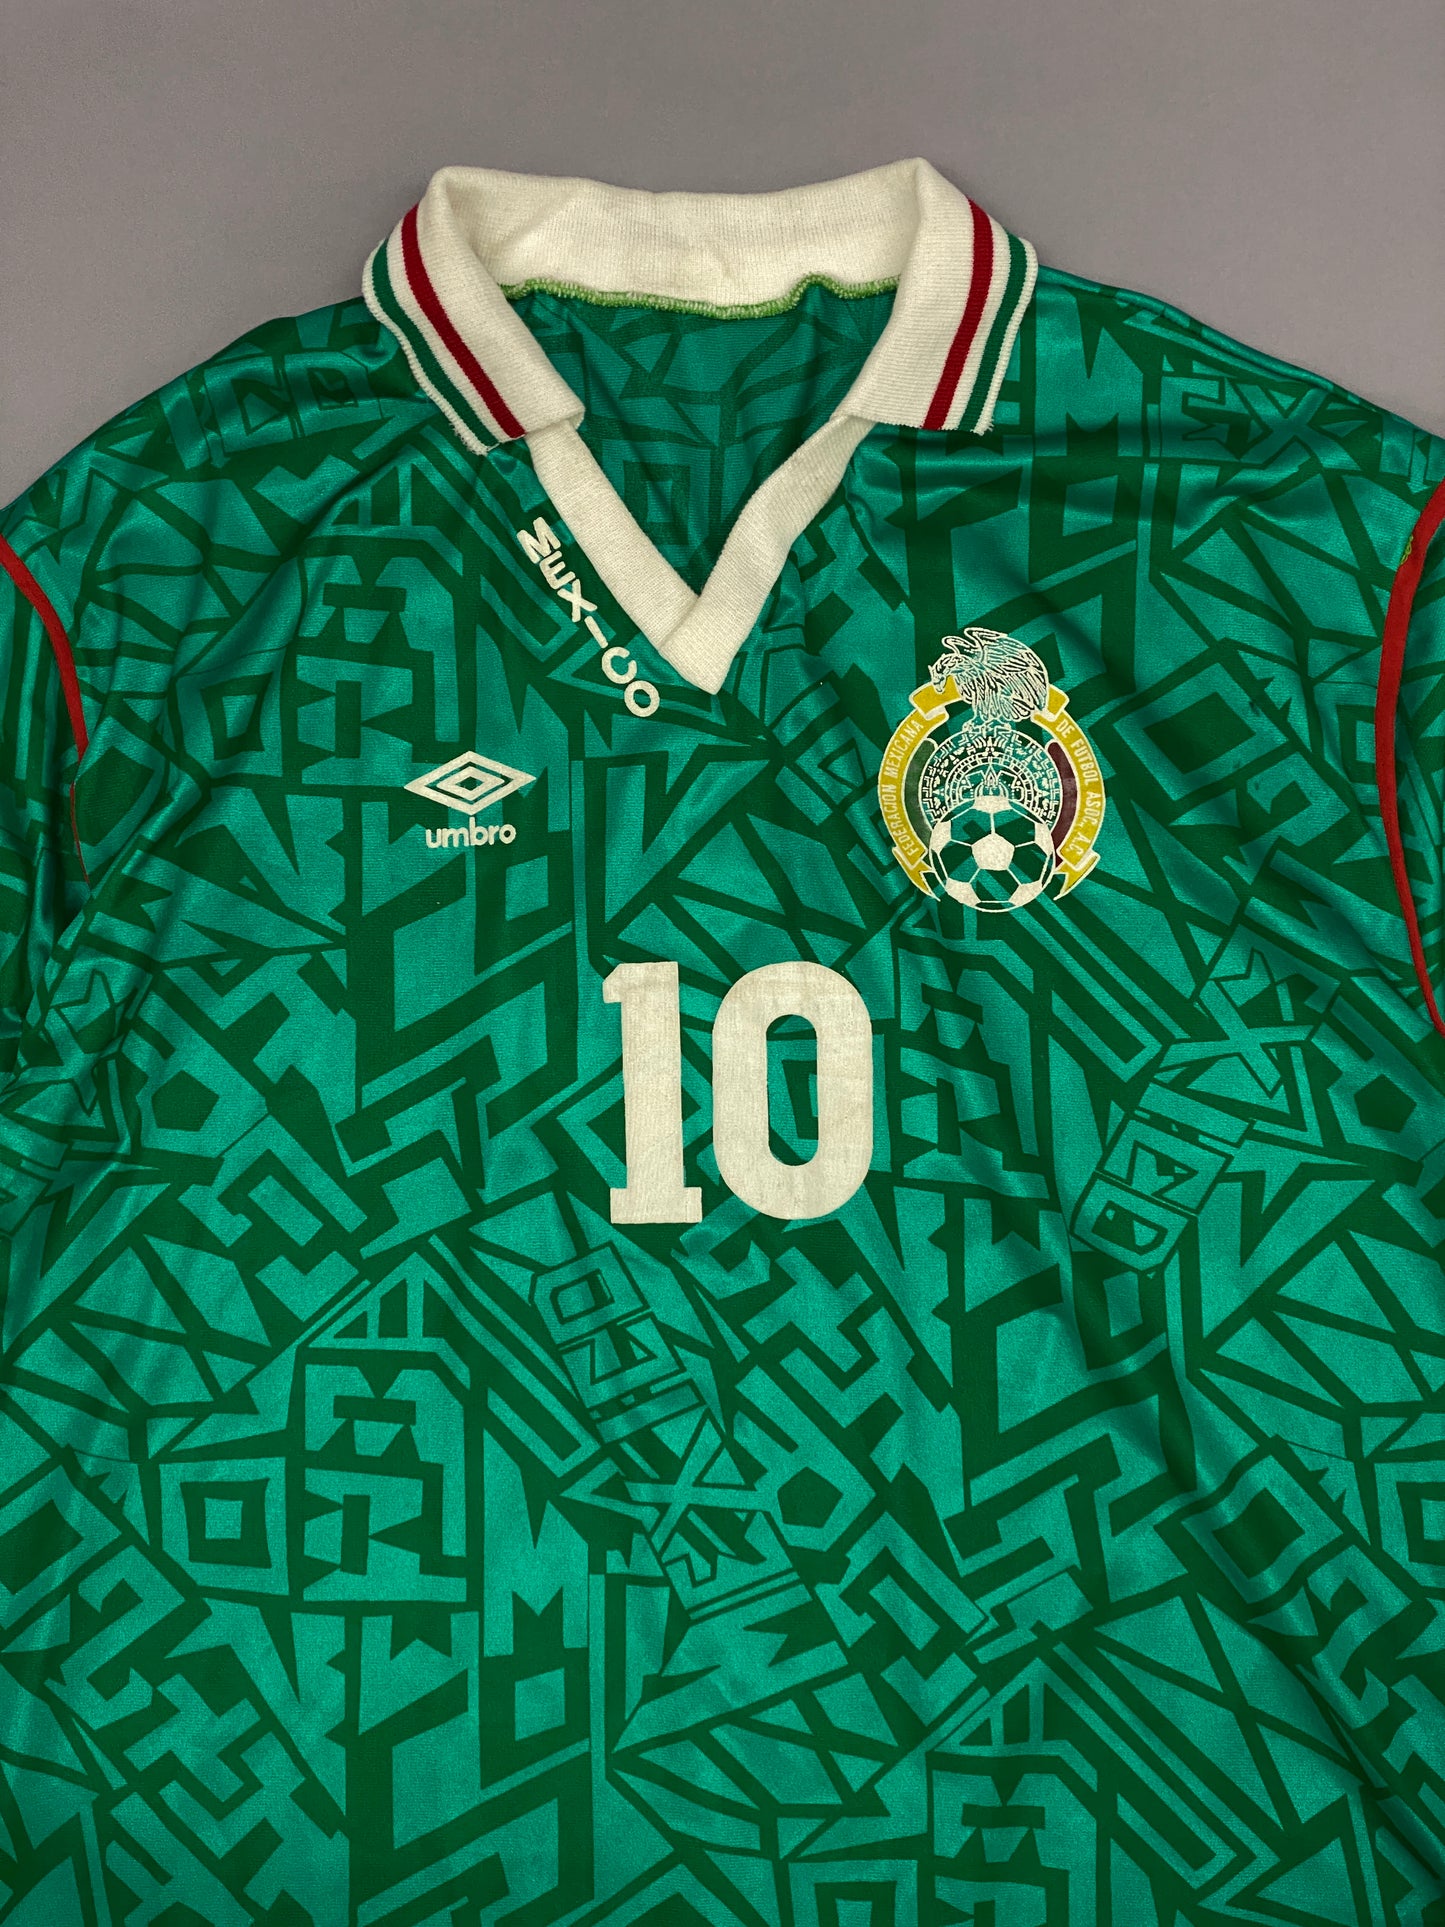 Jersey Mexico 1994 Vintage